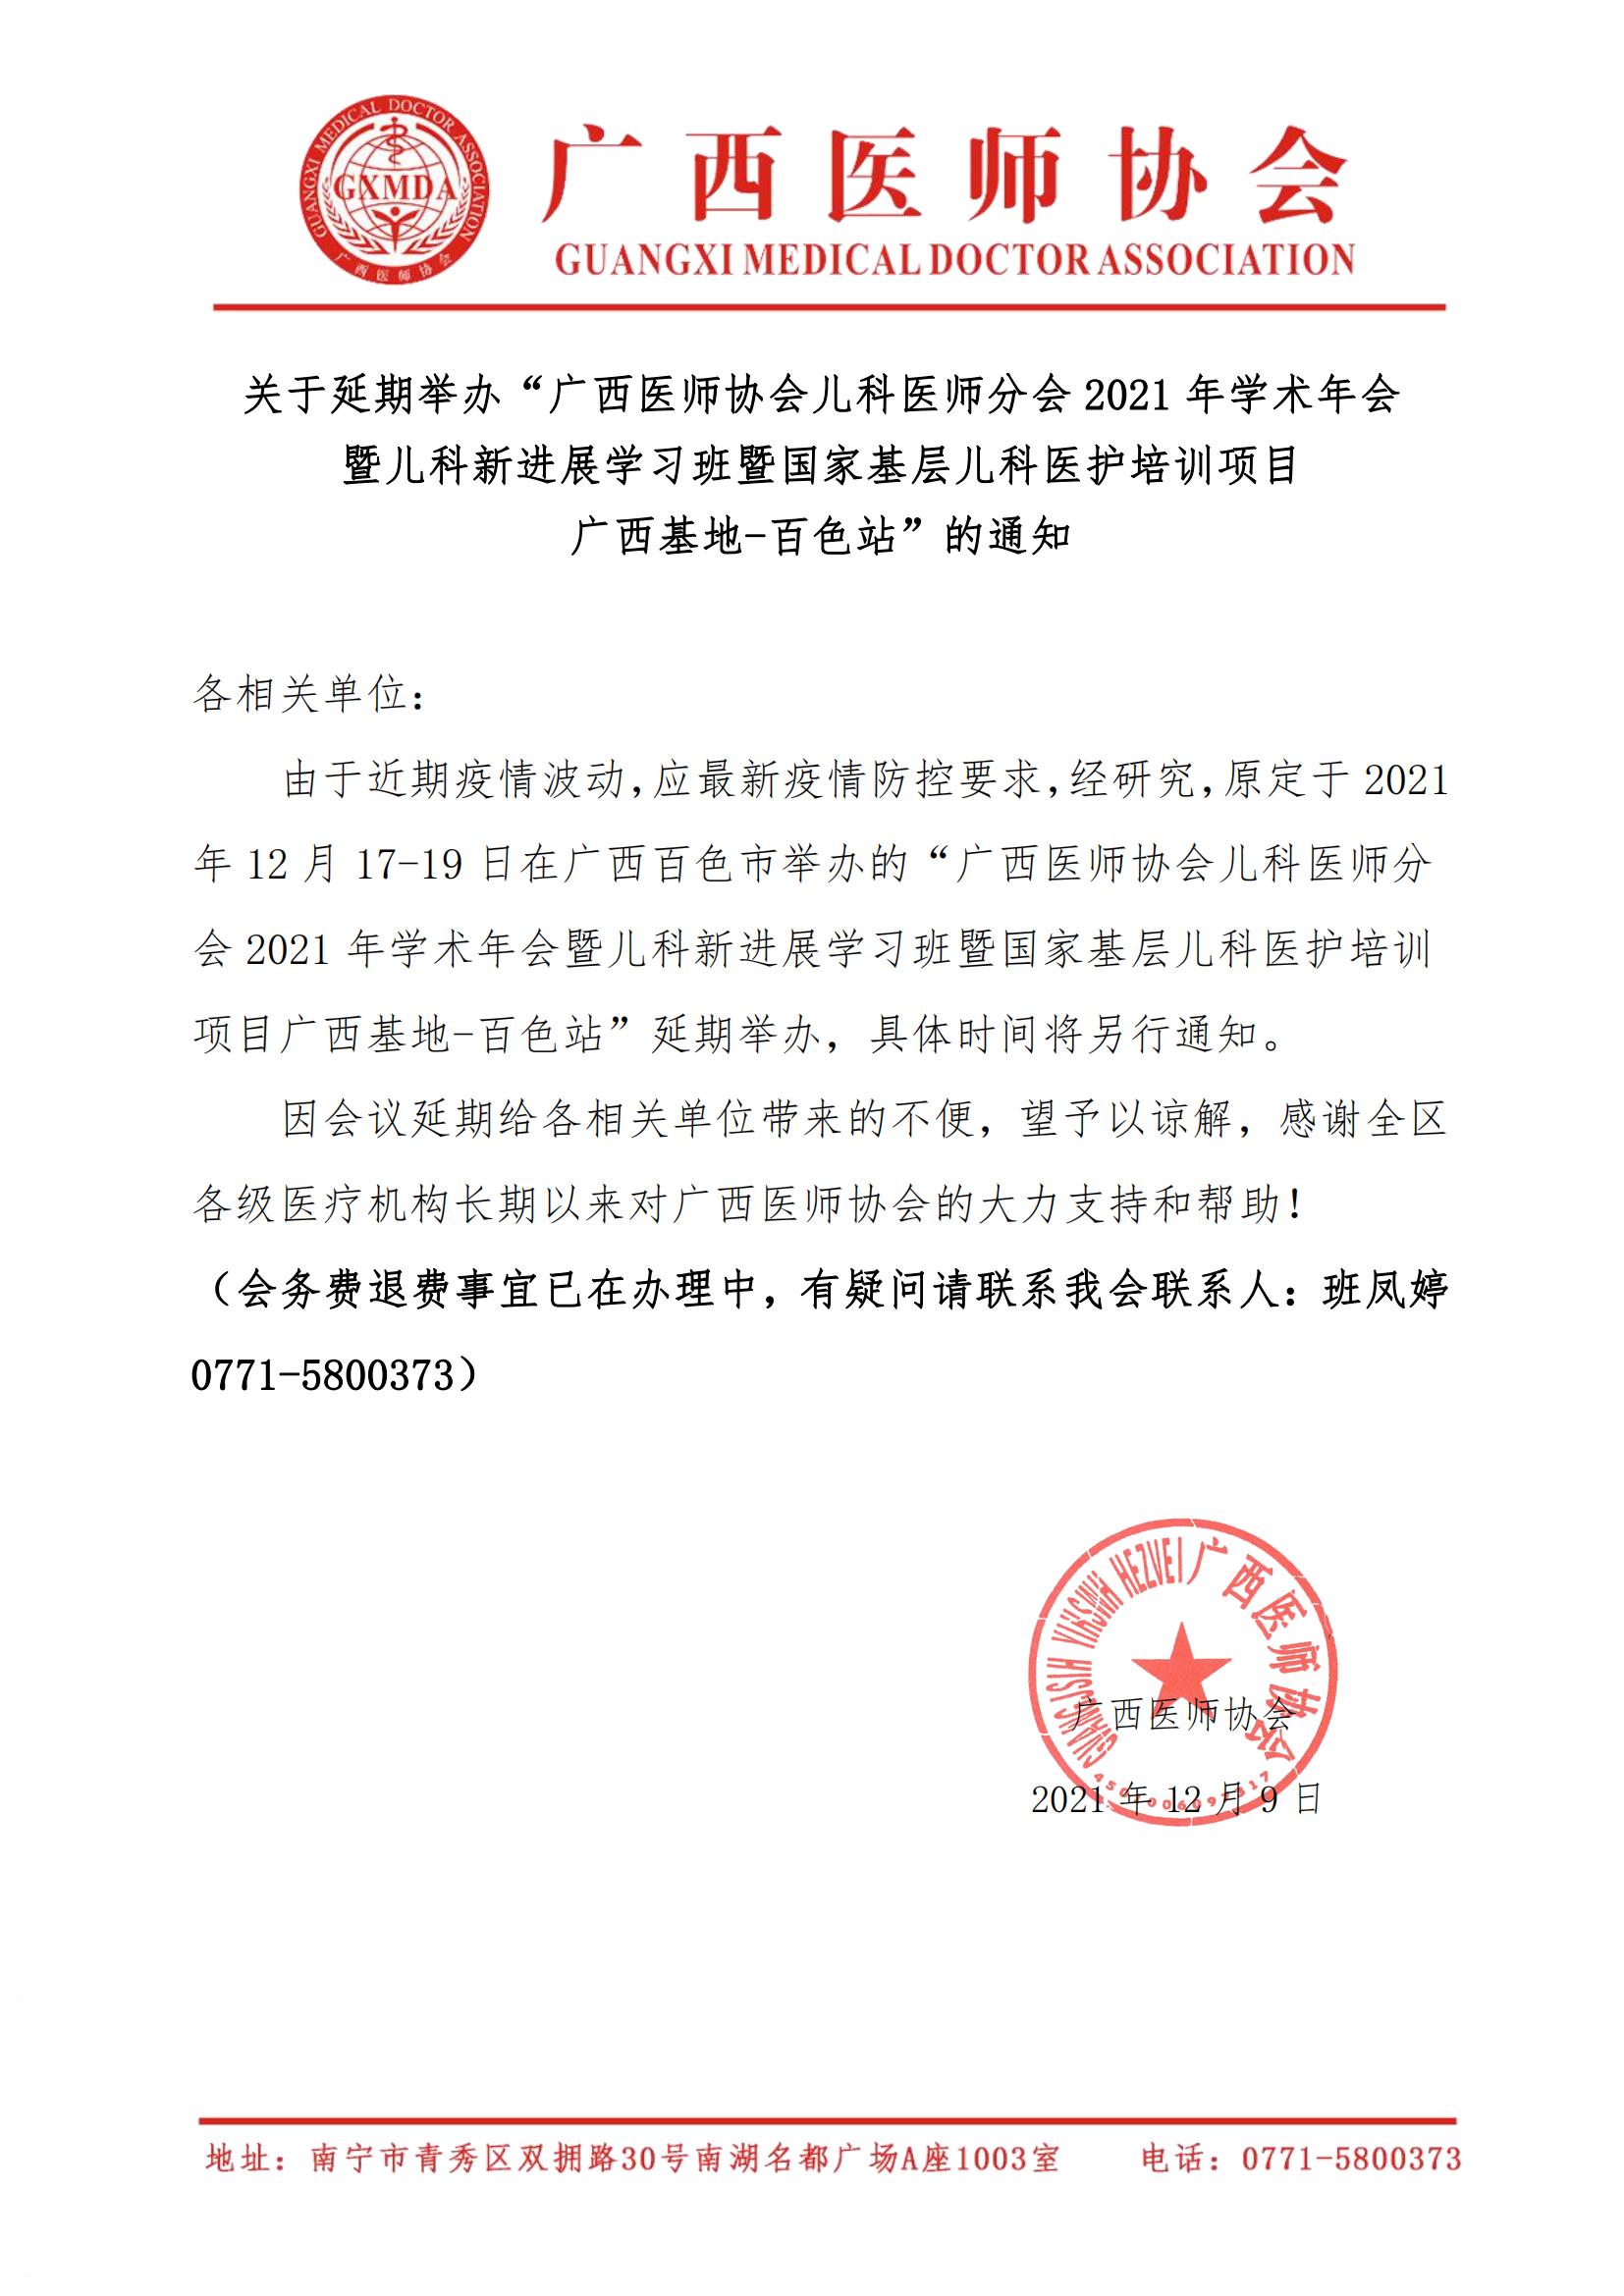 关于延期举办广西医师协会儿科医师分会分会2021年学术年会的通知_00.jpg